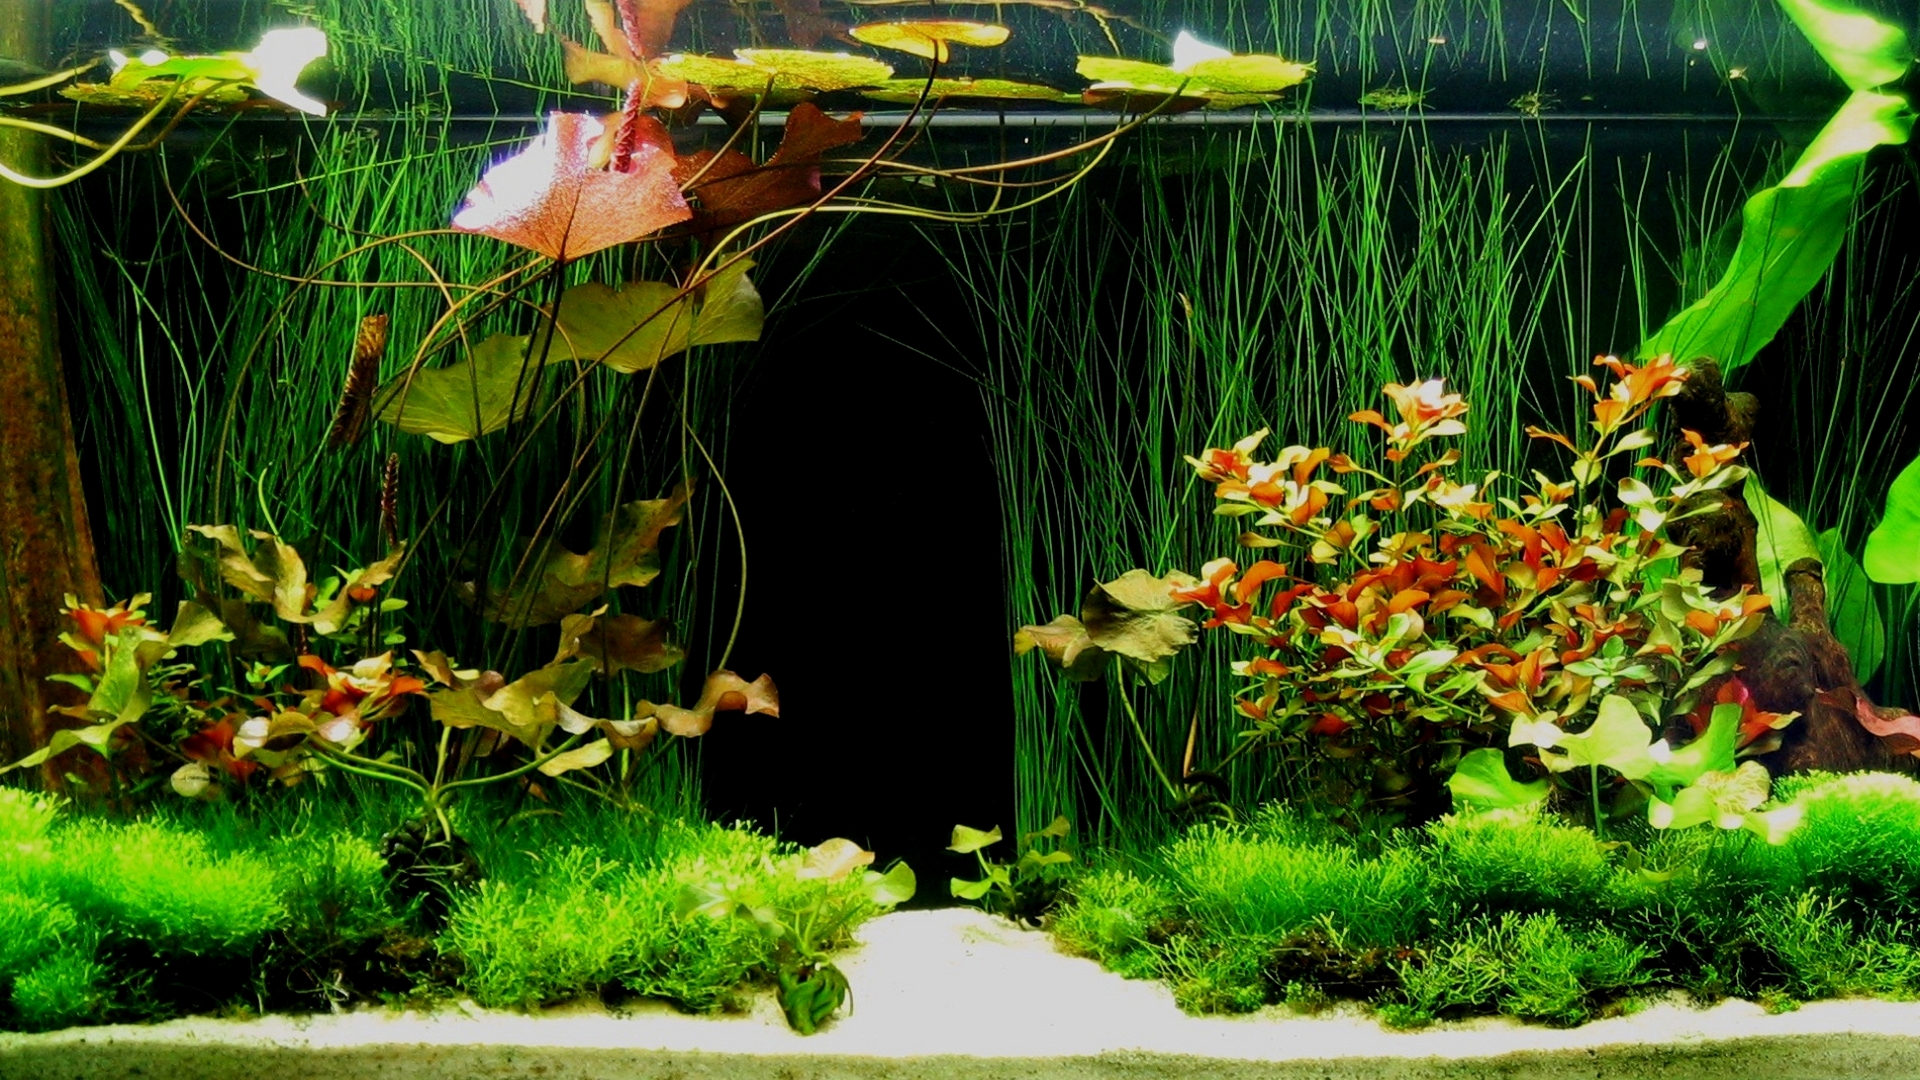 water, tanks, aquarium - desktop wallpaper